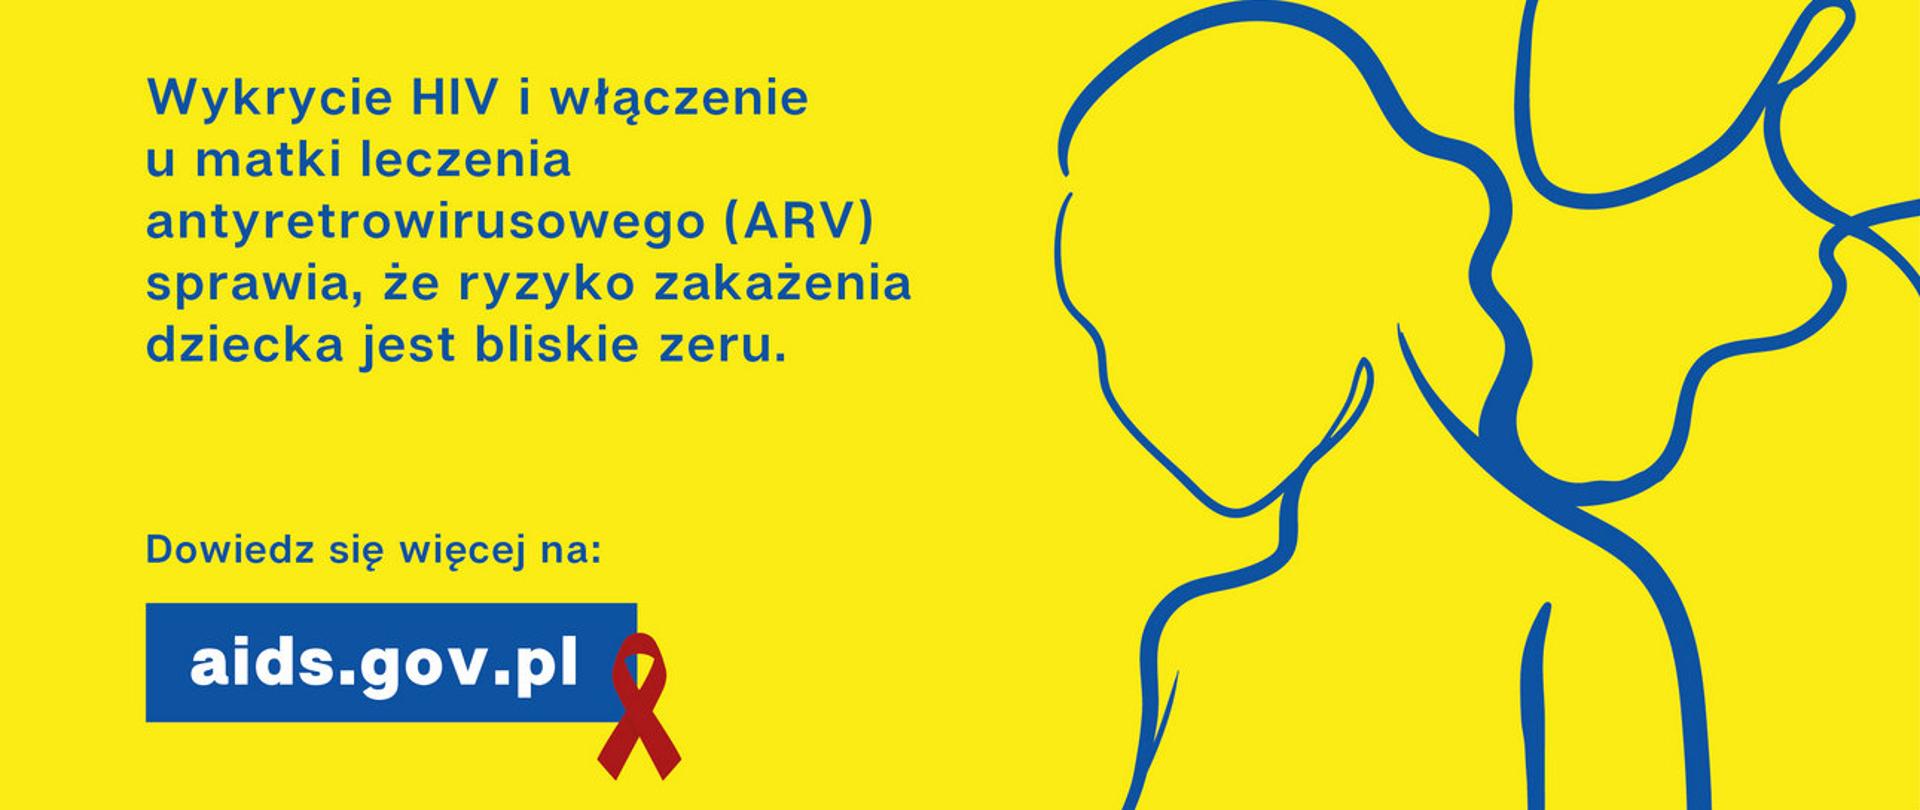 PROFILAKTYKA WERTYKALNA -ZAPOBIEGANIE HIV U DZIECI MATEK ZAKAŻONYCH HIV
Wykrycie HIV i włączenie u matki leczenia antyretrowirusowego (ARV) sprawia, że ryzyko zakażenia dziecka jest bliskie zeru.
Dowiedz się więcej na: aids.gov.pl